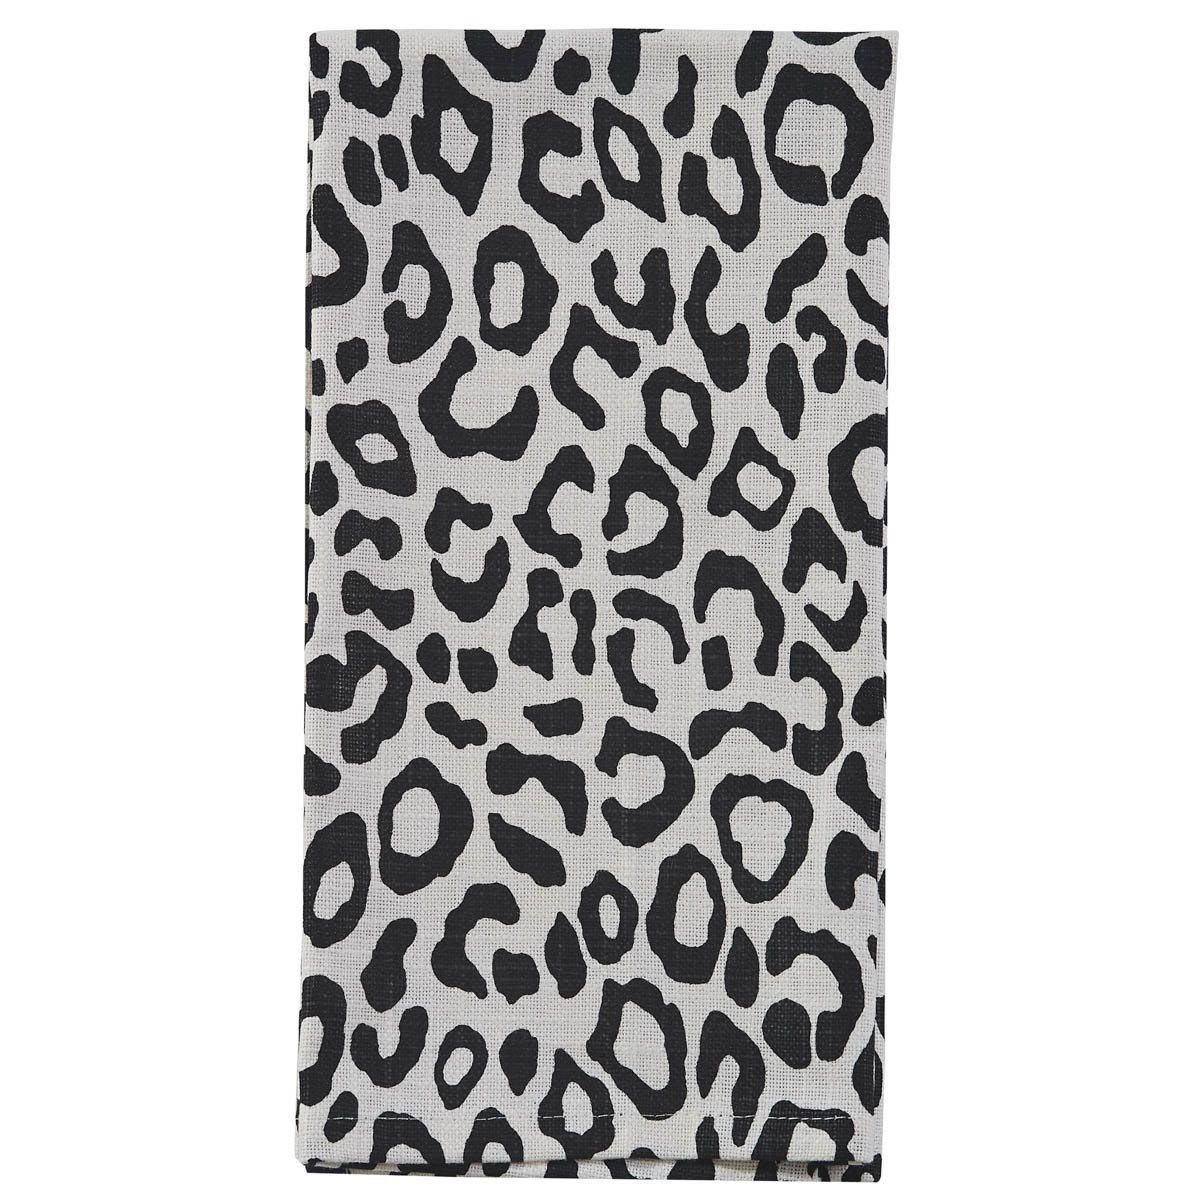 Safari Leopard Printed Towel - Black